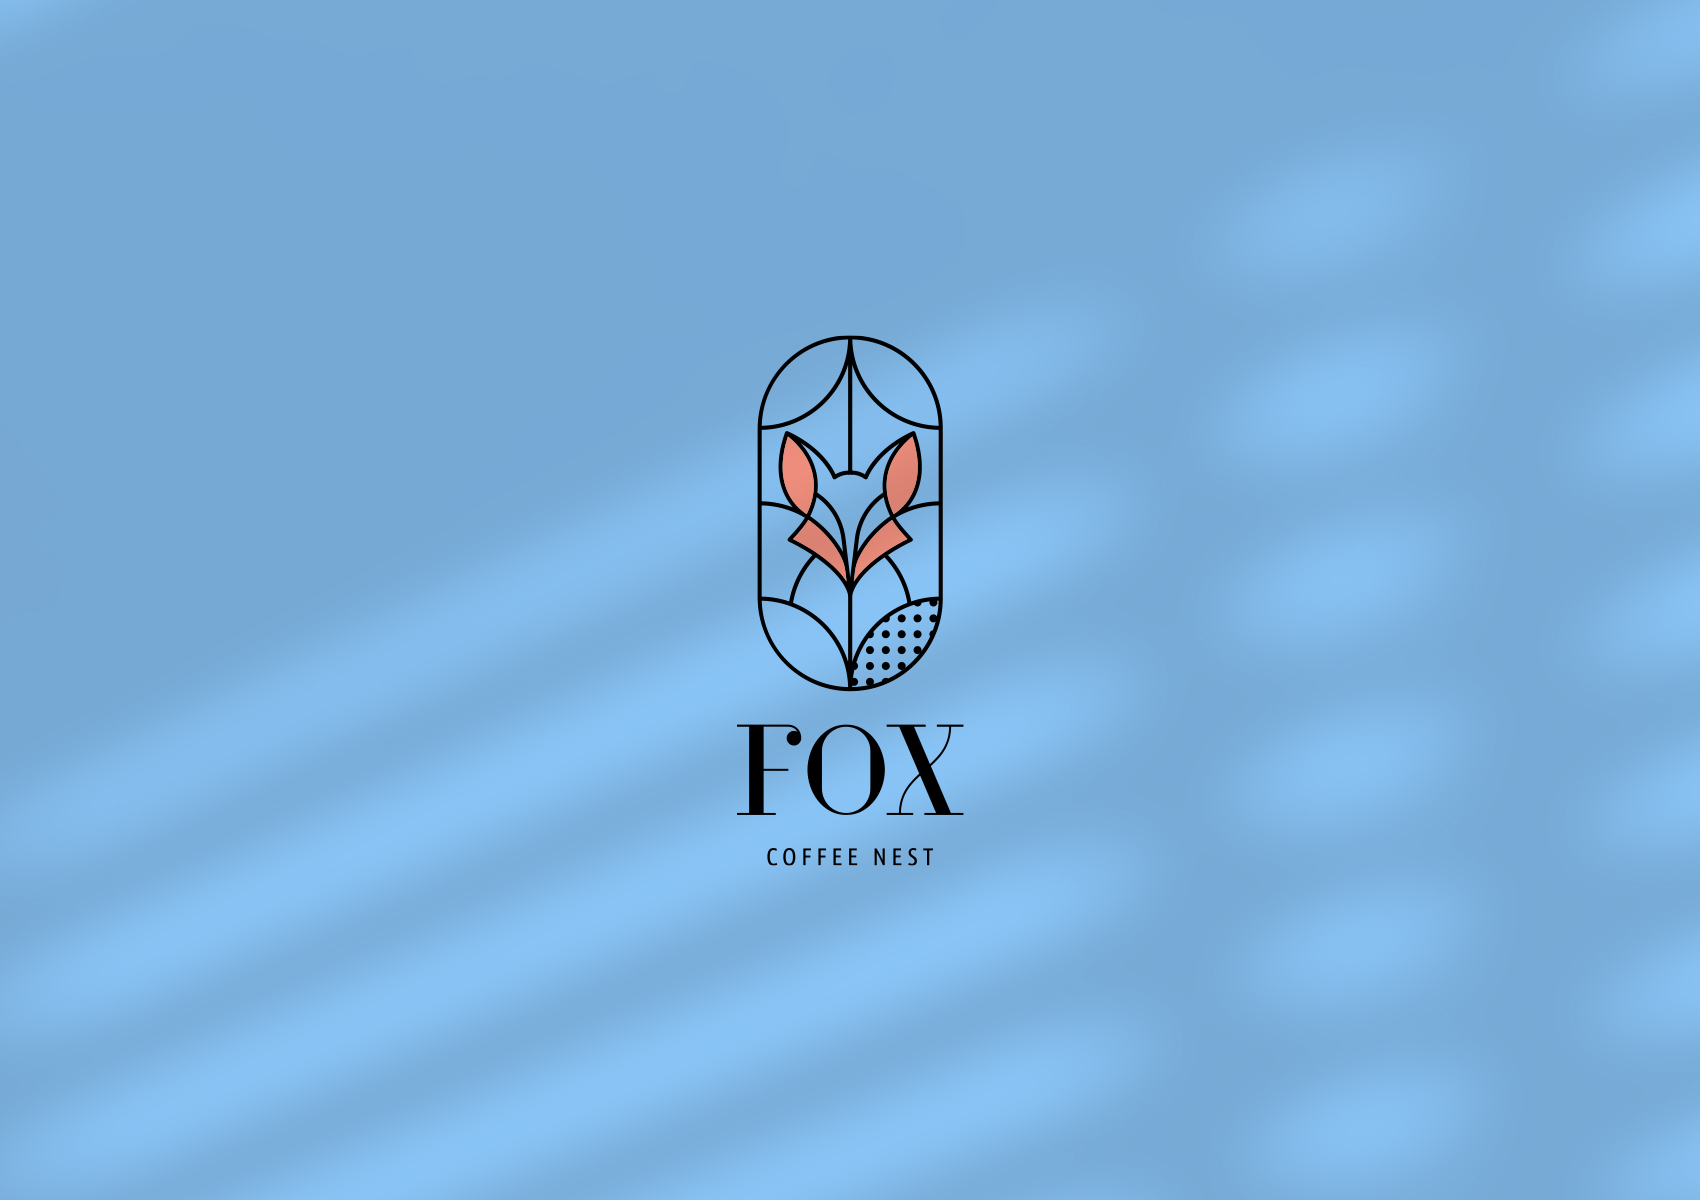 Fox coffee nest main logo 1700x1200 by xhristakis